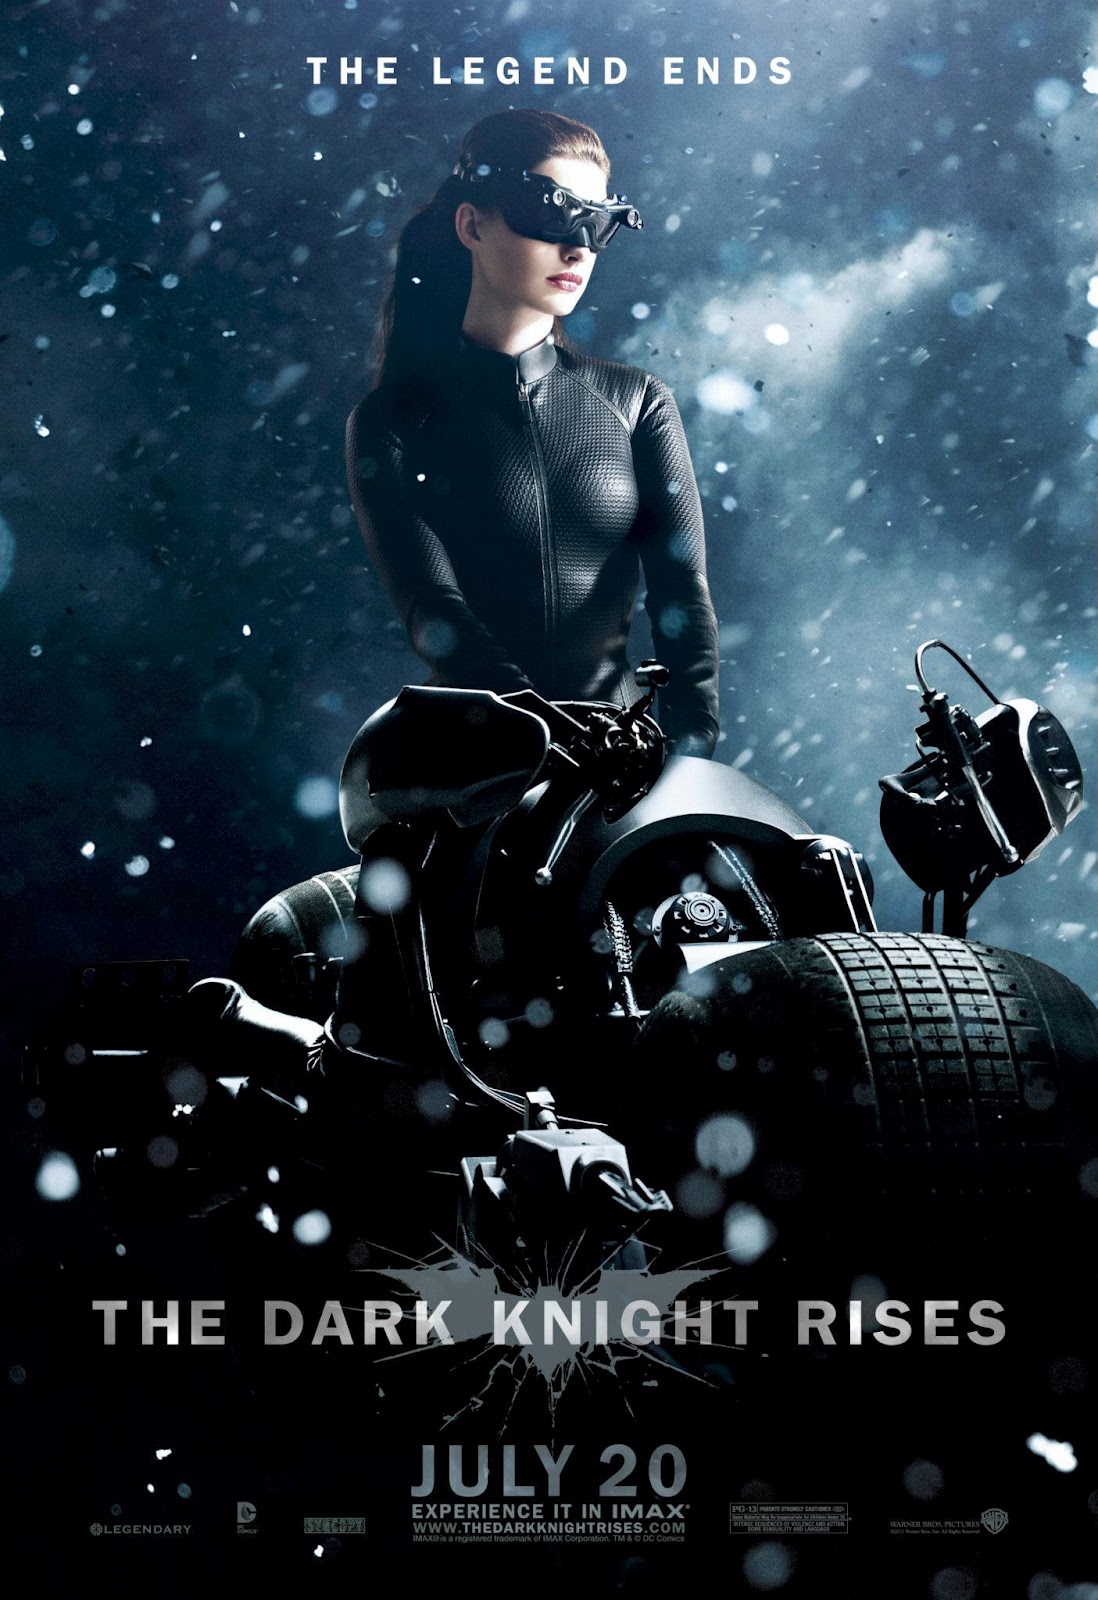 http://3.bp.blogspot.com/-Uqq6K-Ujc78/T8A9_7oG6II/AAAAAAAAJIc/HhXqB_tMyfI/s1600/Anne+Hathaway++The+Dark+Knight+Rises++Posters+(1).jpg